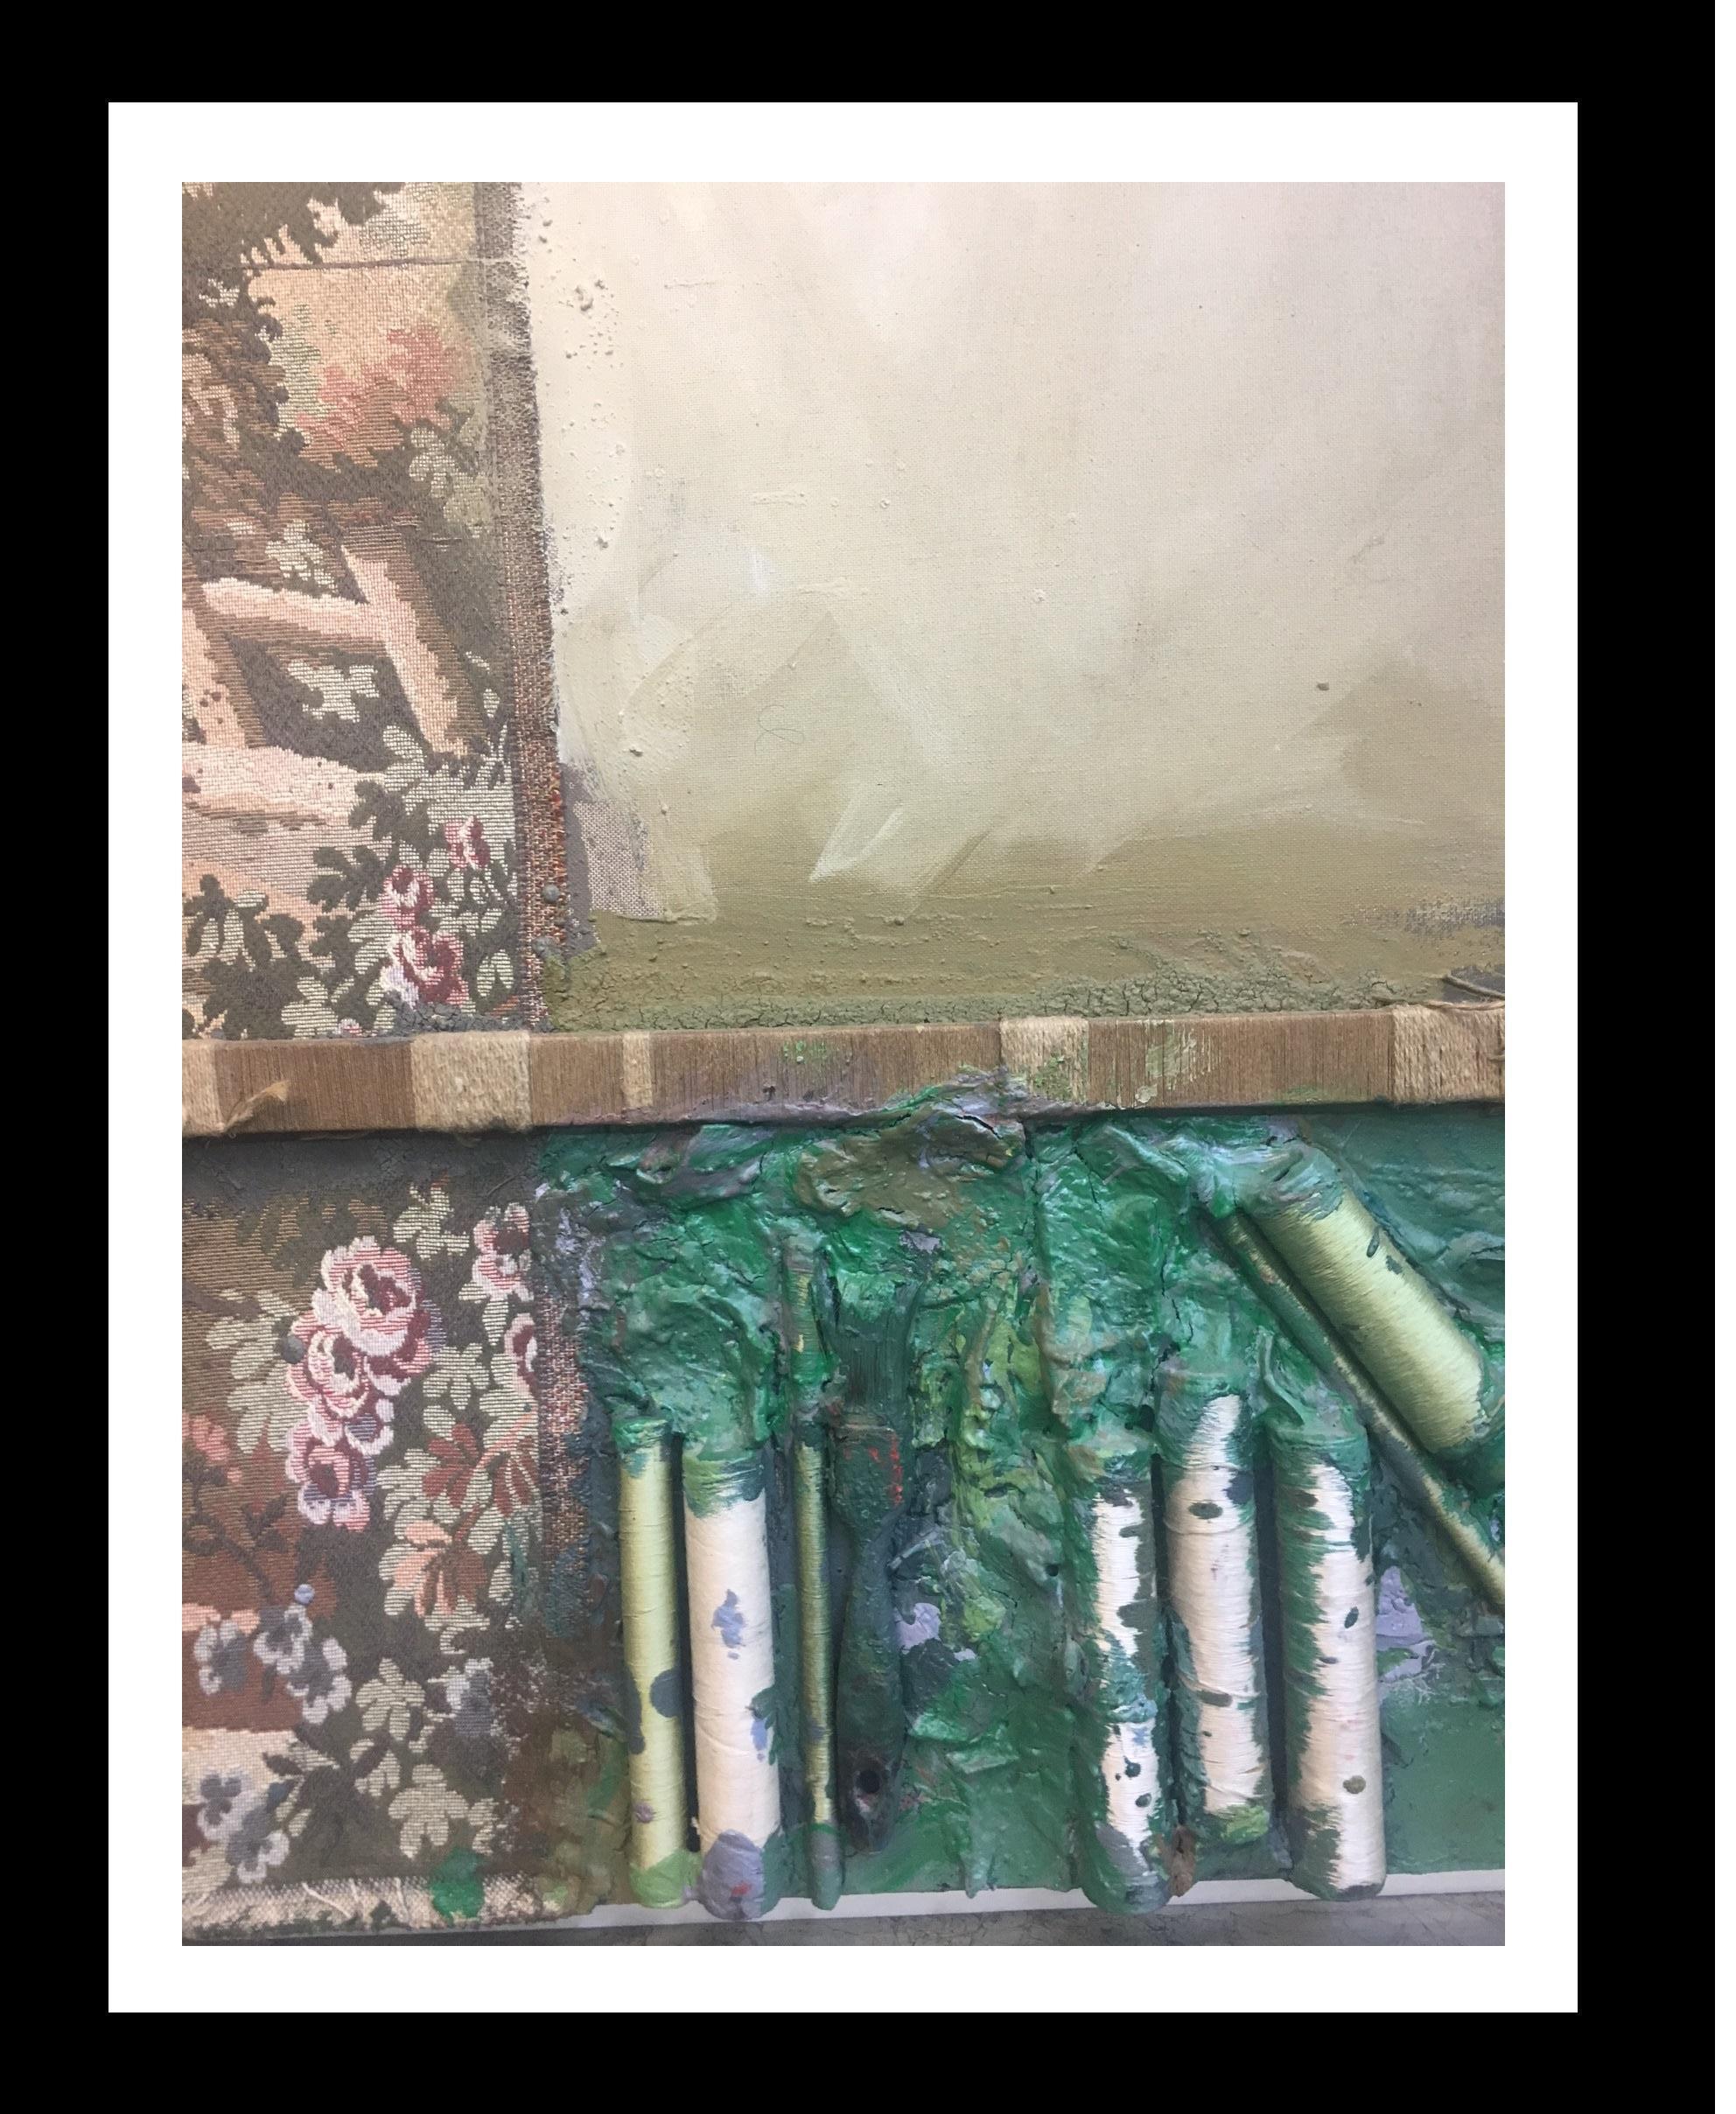  Grau Garriga   Textilien  Gewindespulen  Grün  Ocker  Collage. abstrakt 